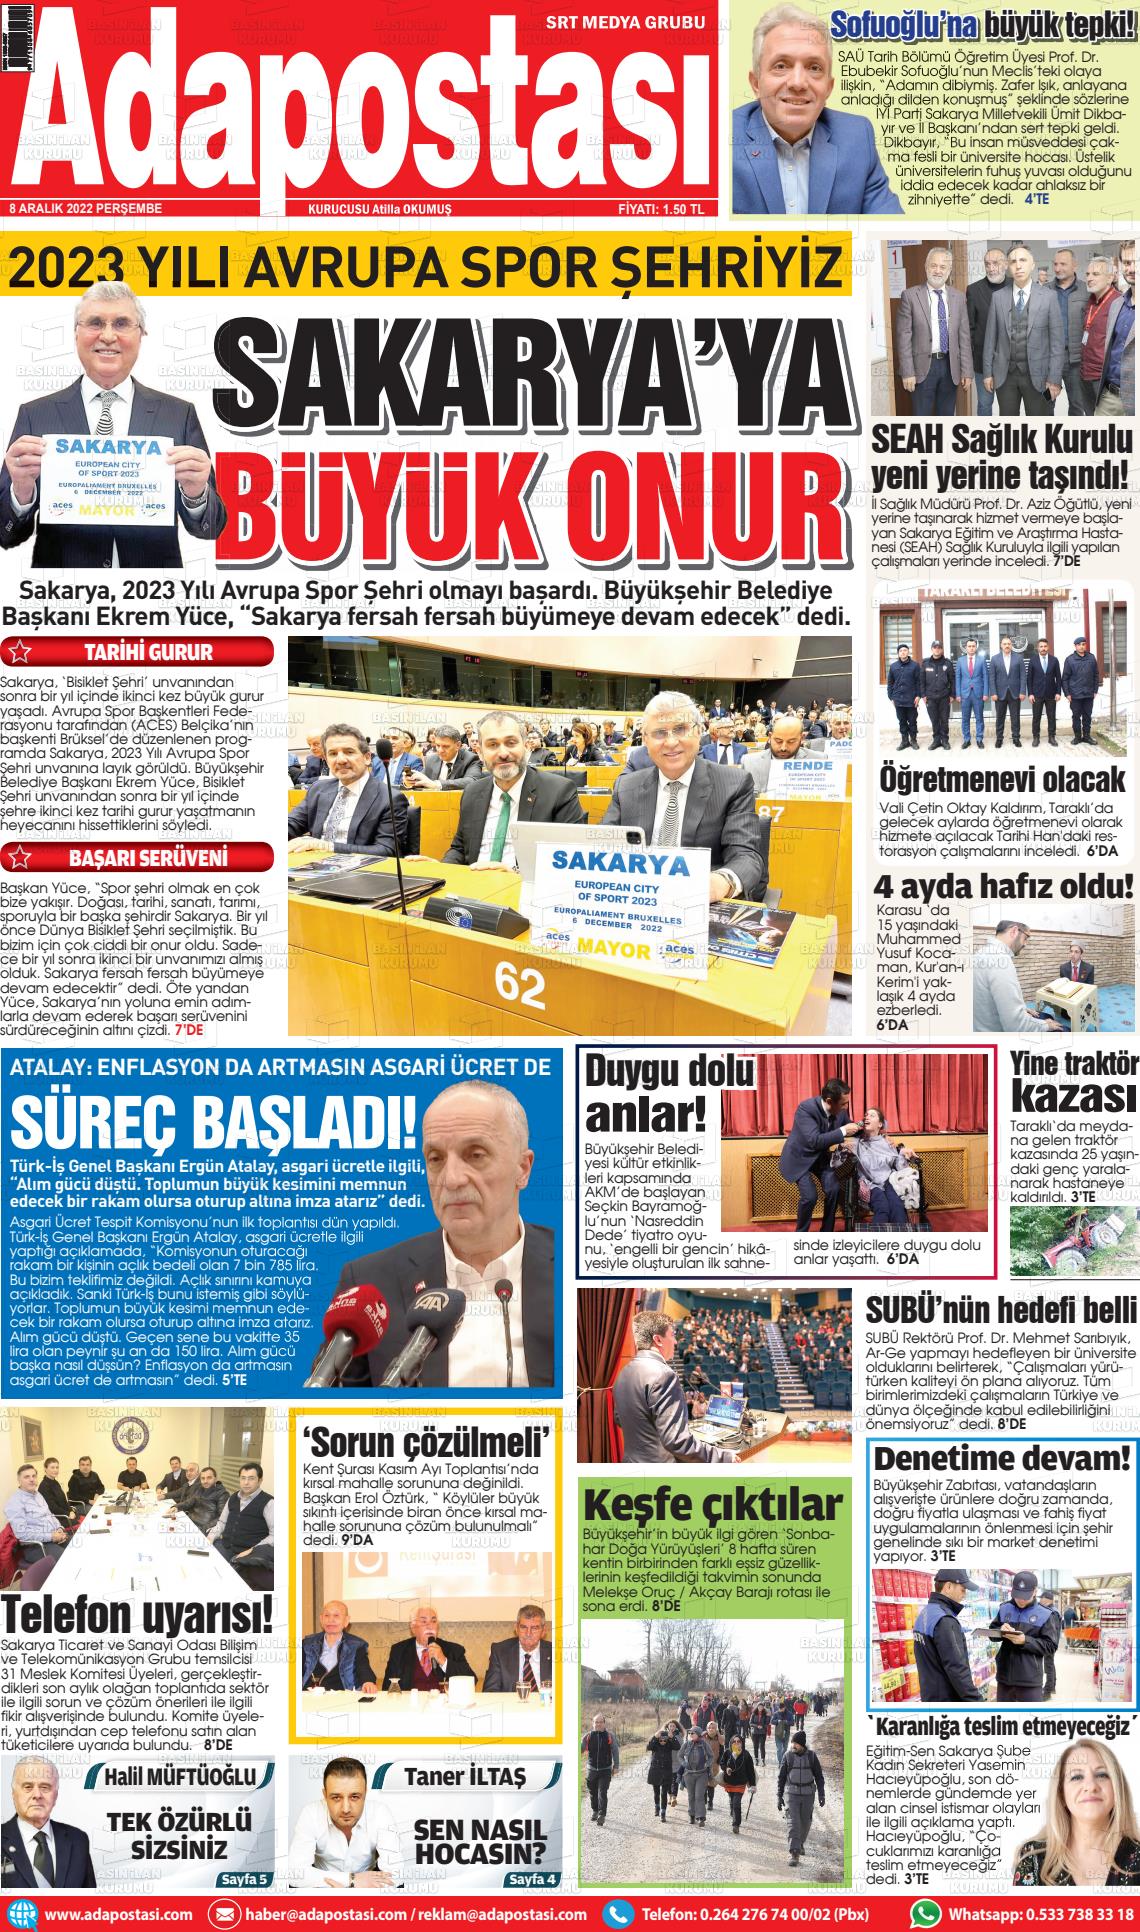 08 Aralık 2022 Ada Postası Gazete Manşeti